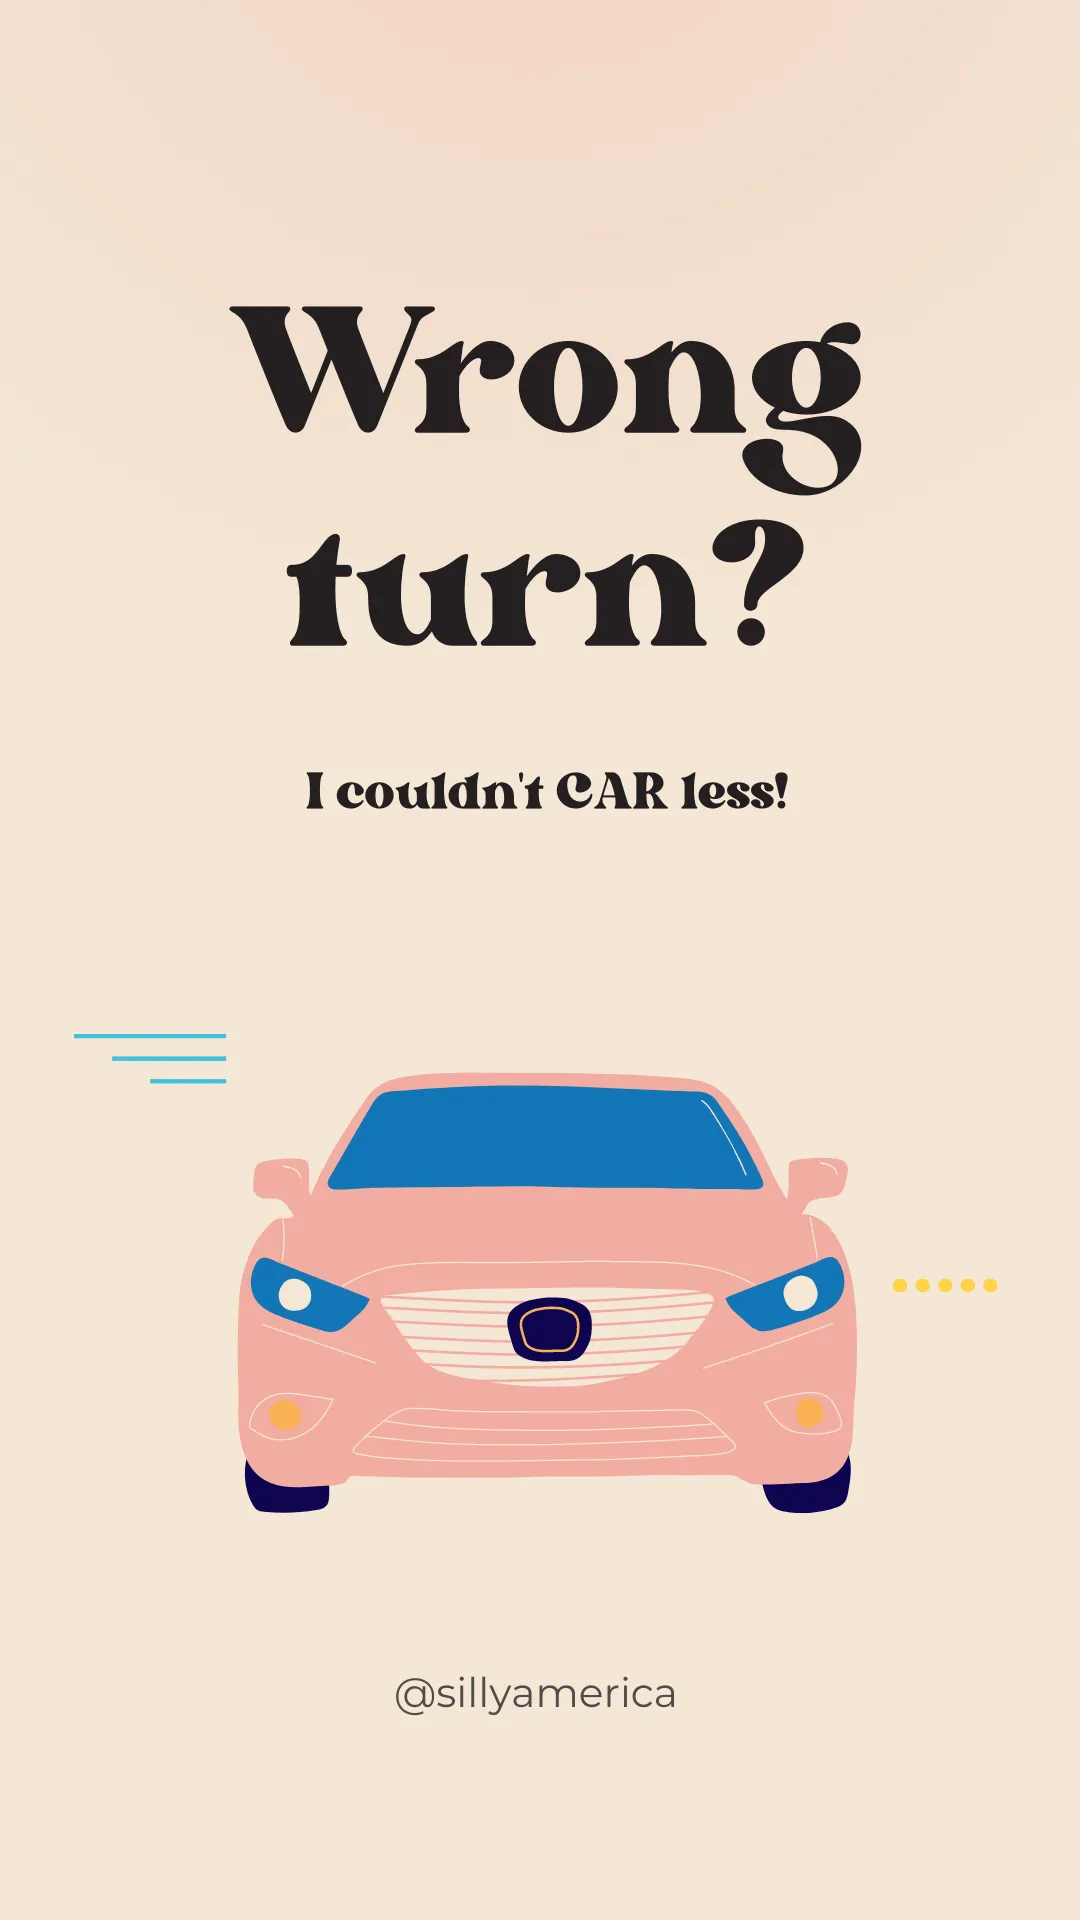 Wrong turn? I couldn't CAR less! - Road Trip Puns